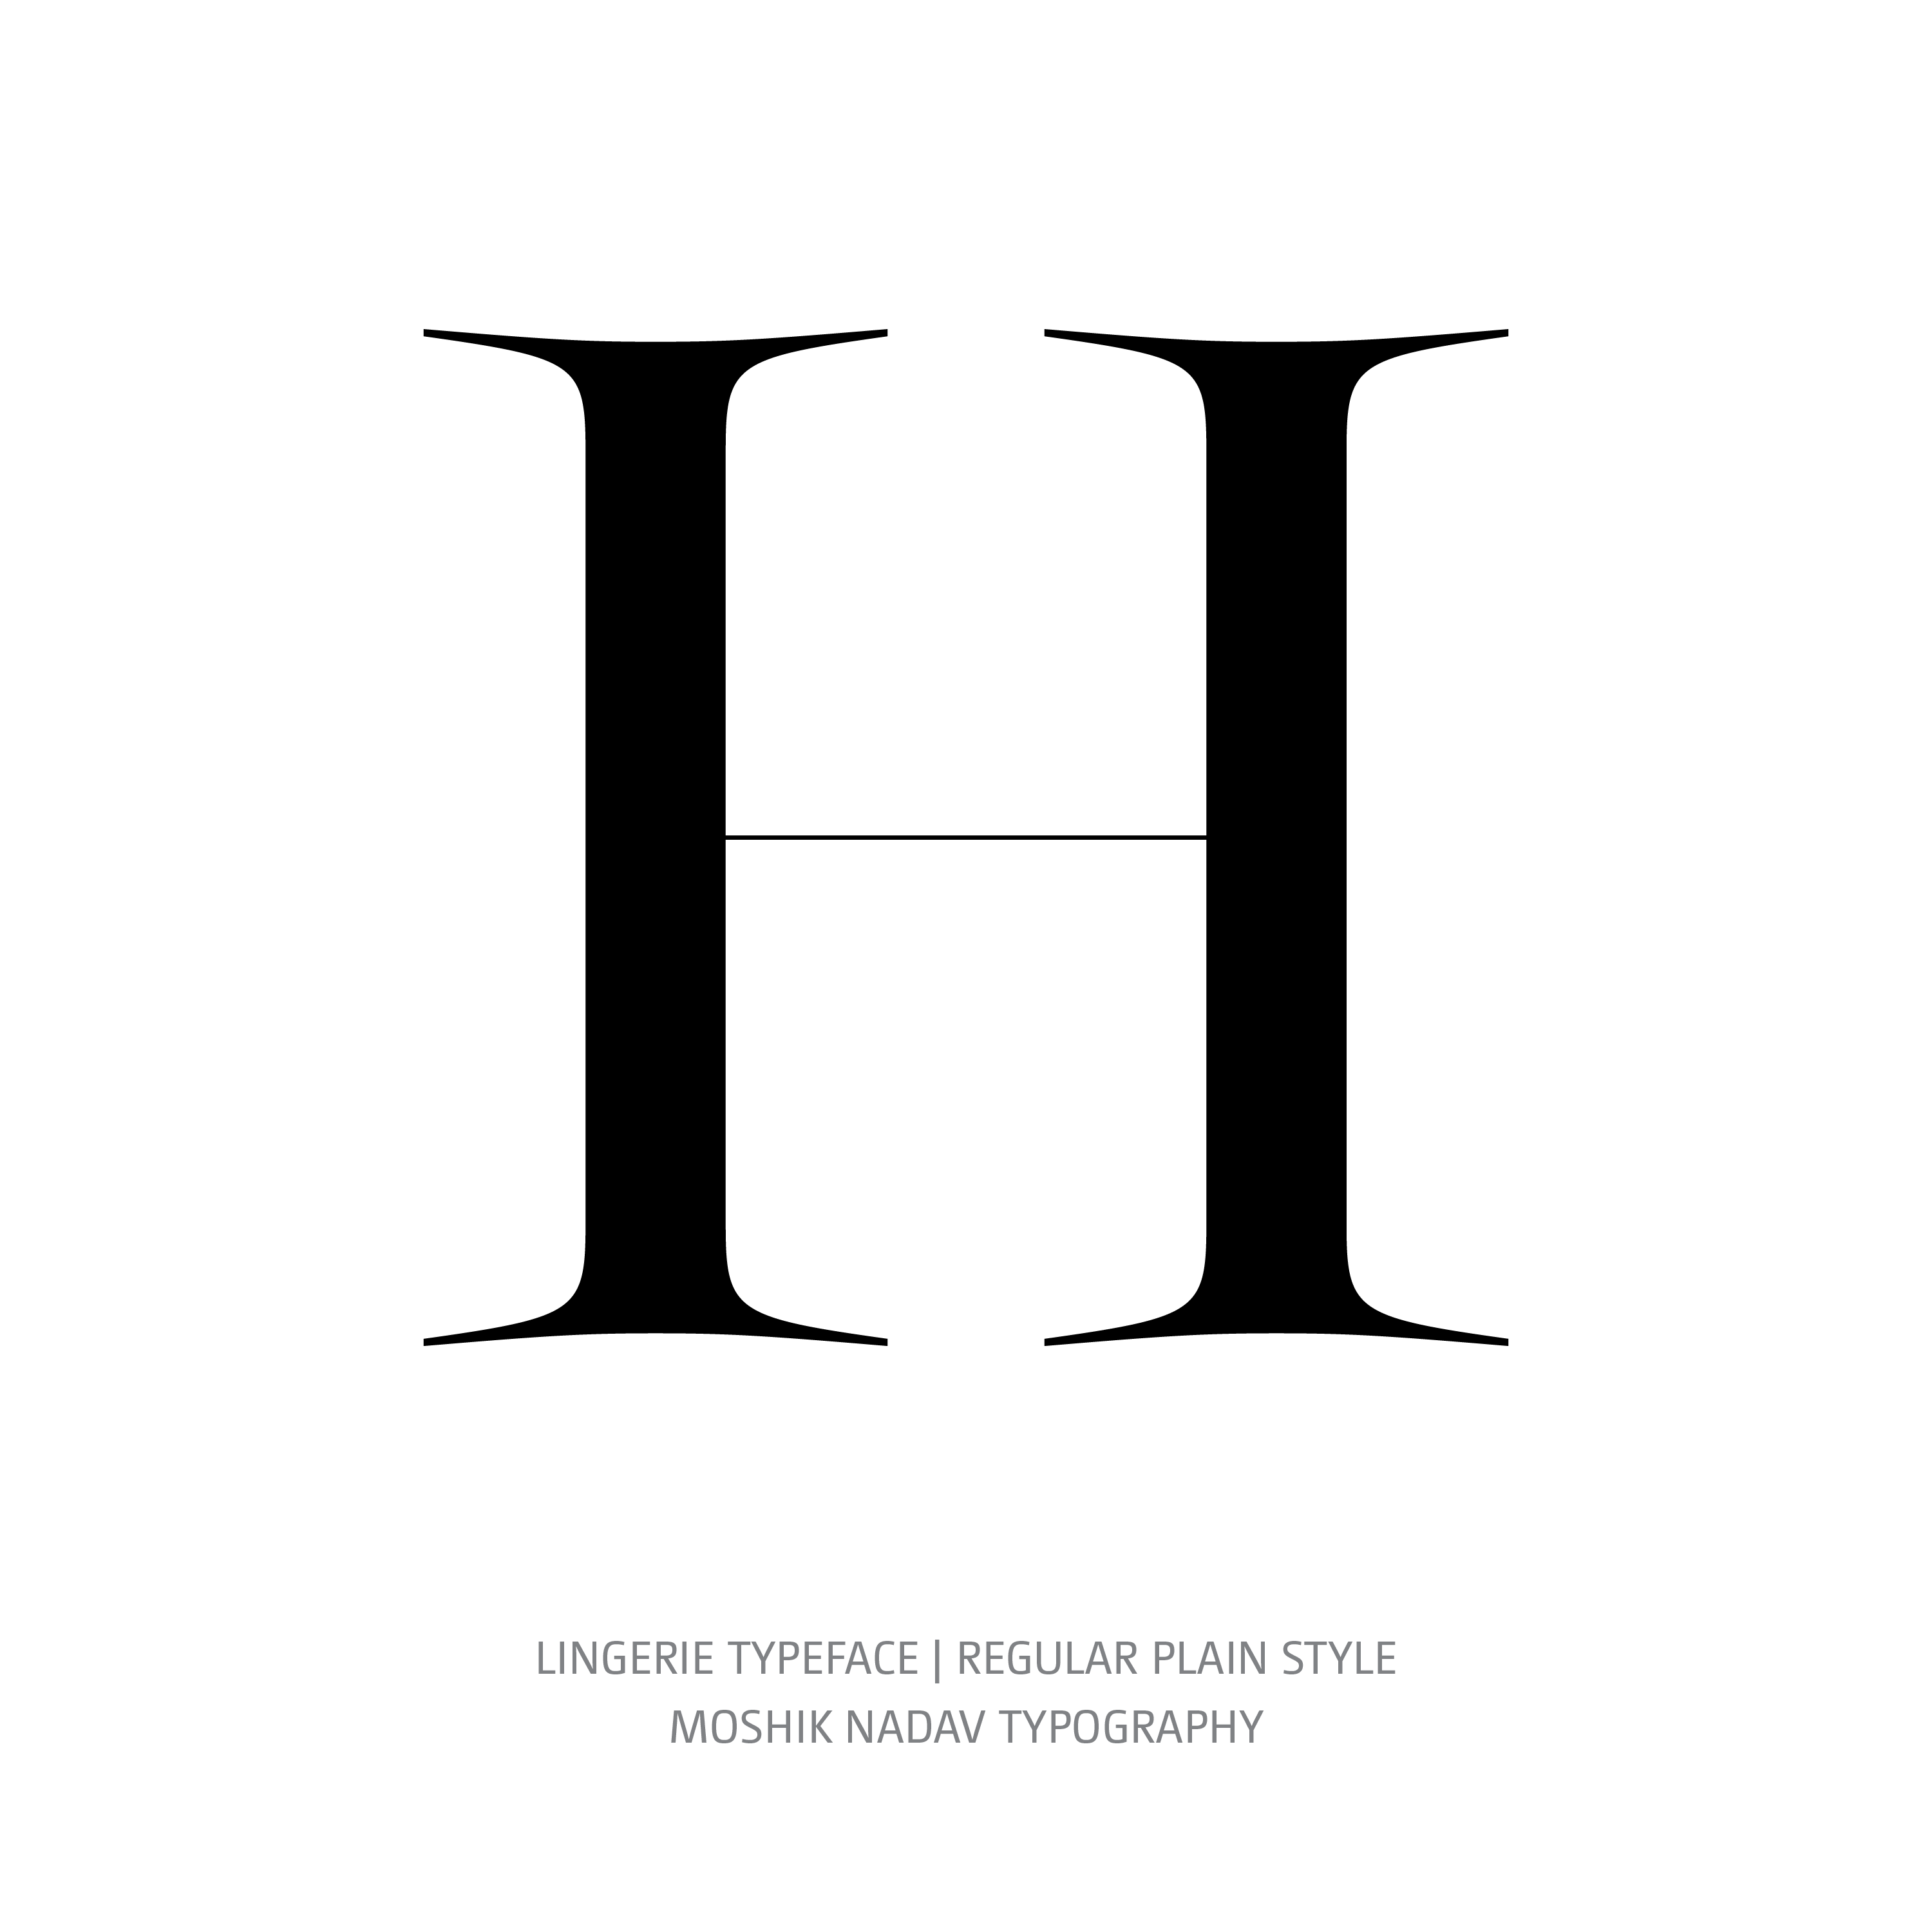 Lingerie Typeface Regular Plain H